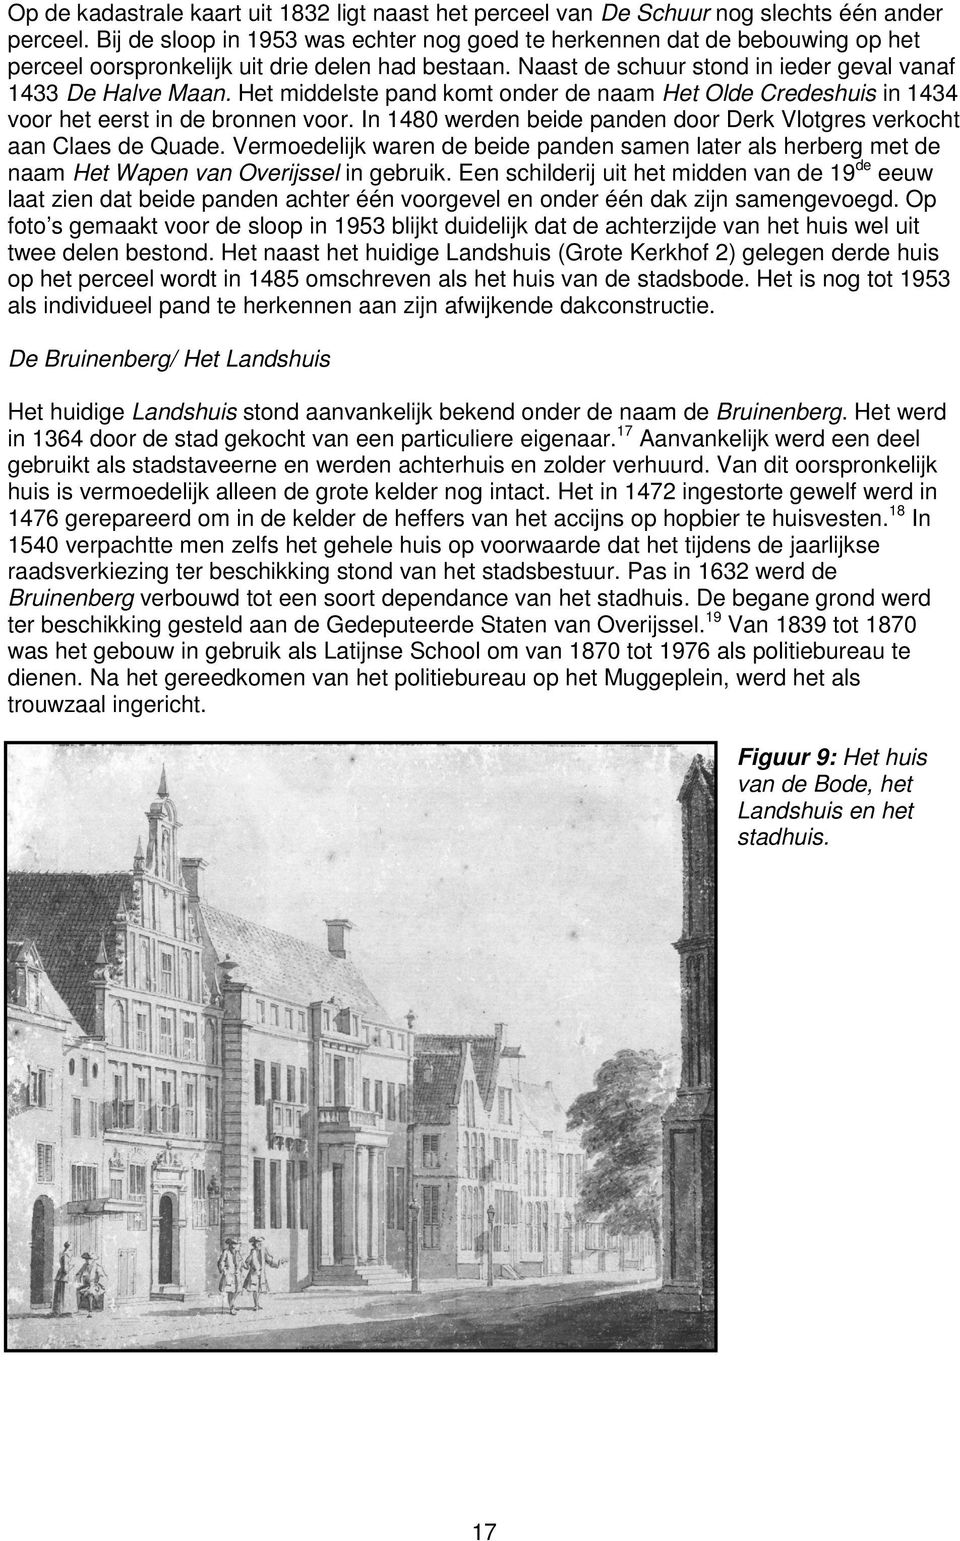 Het middelste pand komt onder de naam Het Olde Credeshuis in 1434 voor het eerst in de bronnen voor. In 1480 werden beide panden door Derk Vlotgres verkocht aan Claes de Quade.